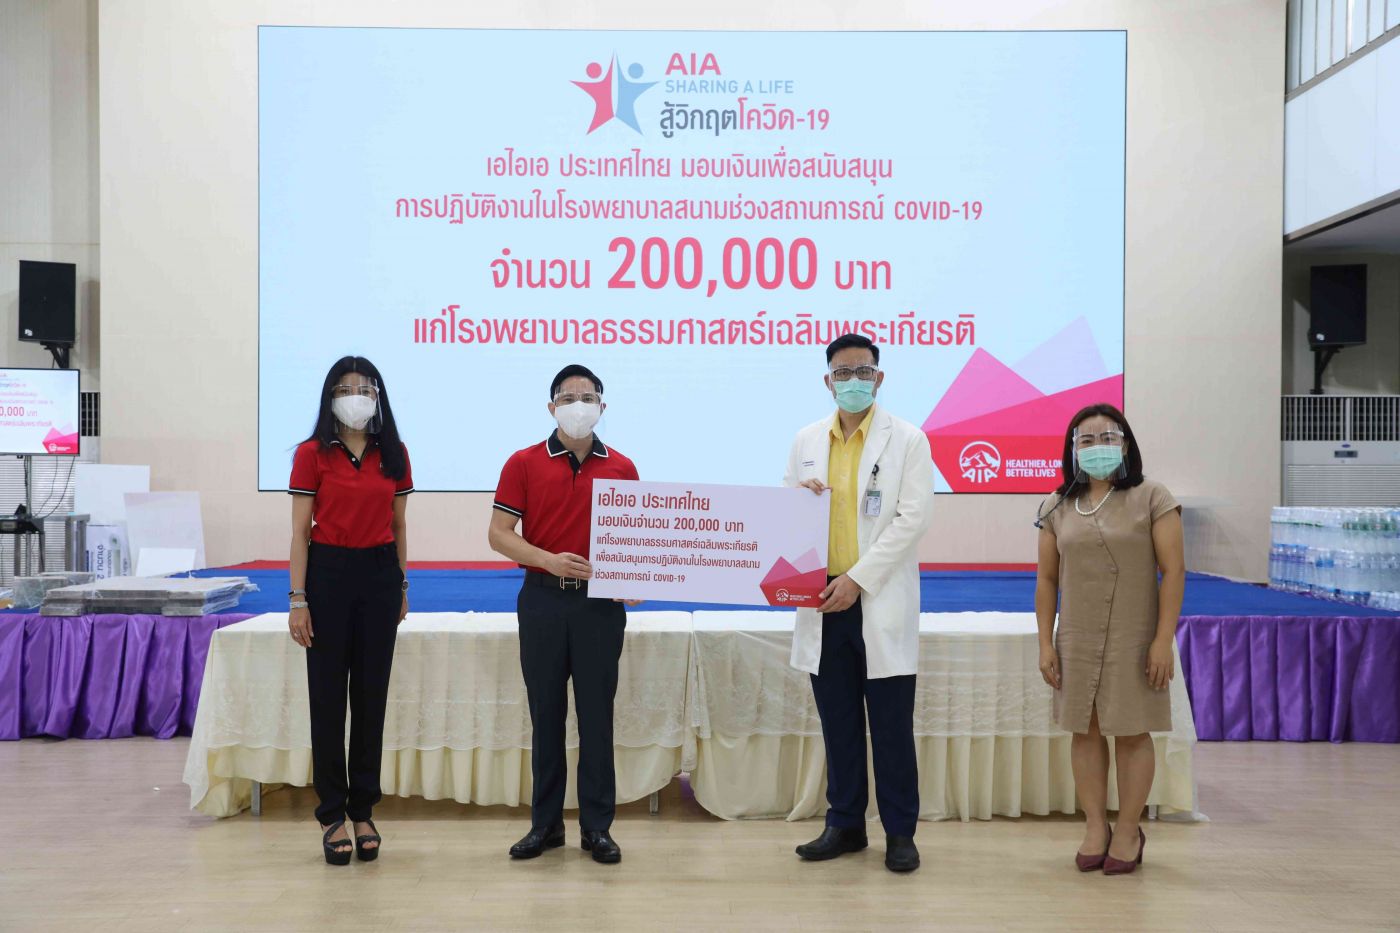 เอไอเอ ประเทศไทย สานต่อโครงการ ‘AIA Sharing A Life’ ปีที่ 8 มอบ 2 ล้านบาท สนับสนุนโรงพยาบาลสนาม 20 แห่งทั่วประเทศสู้วิกฤตโควิด-19